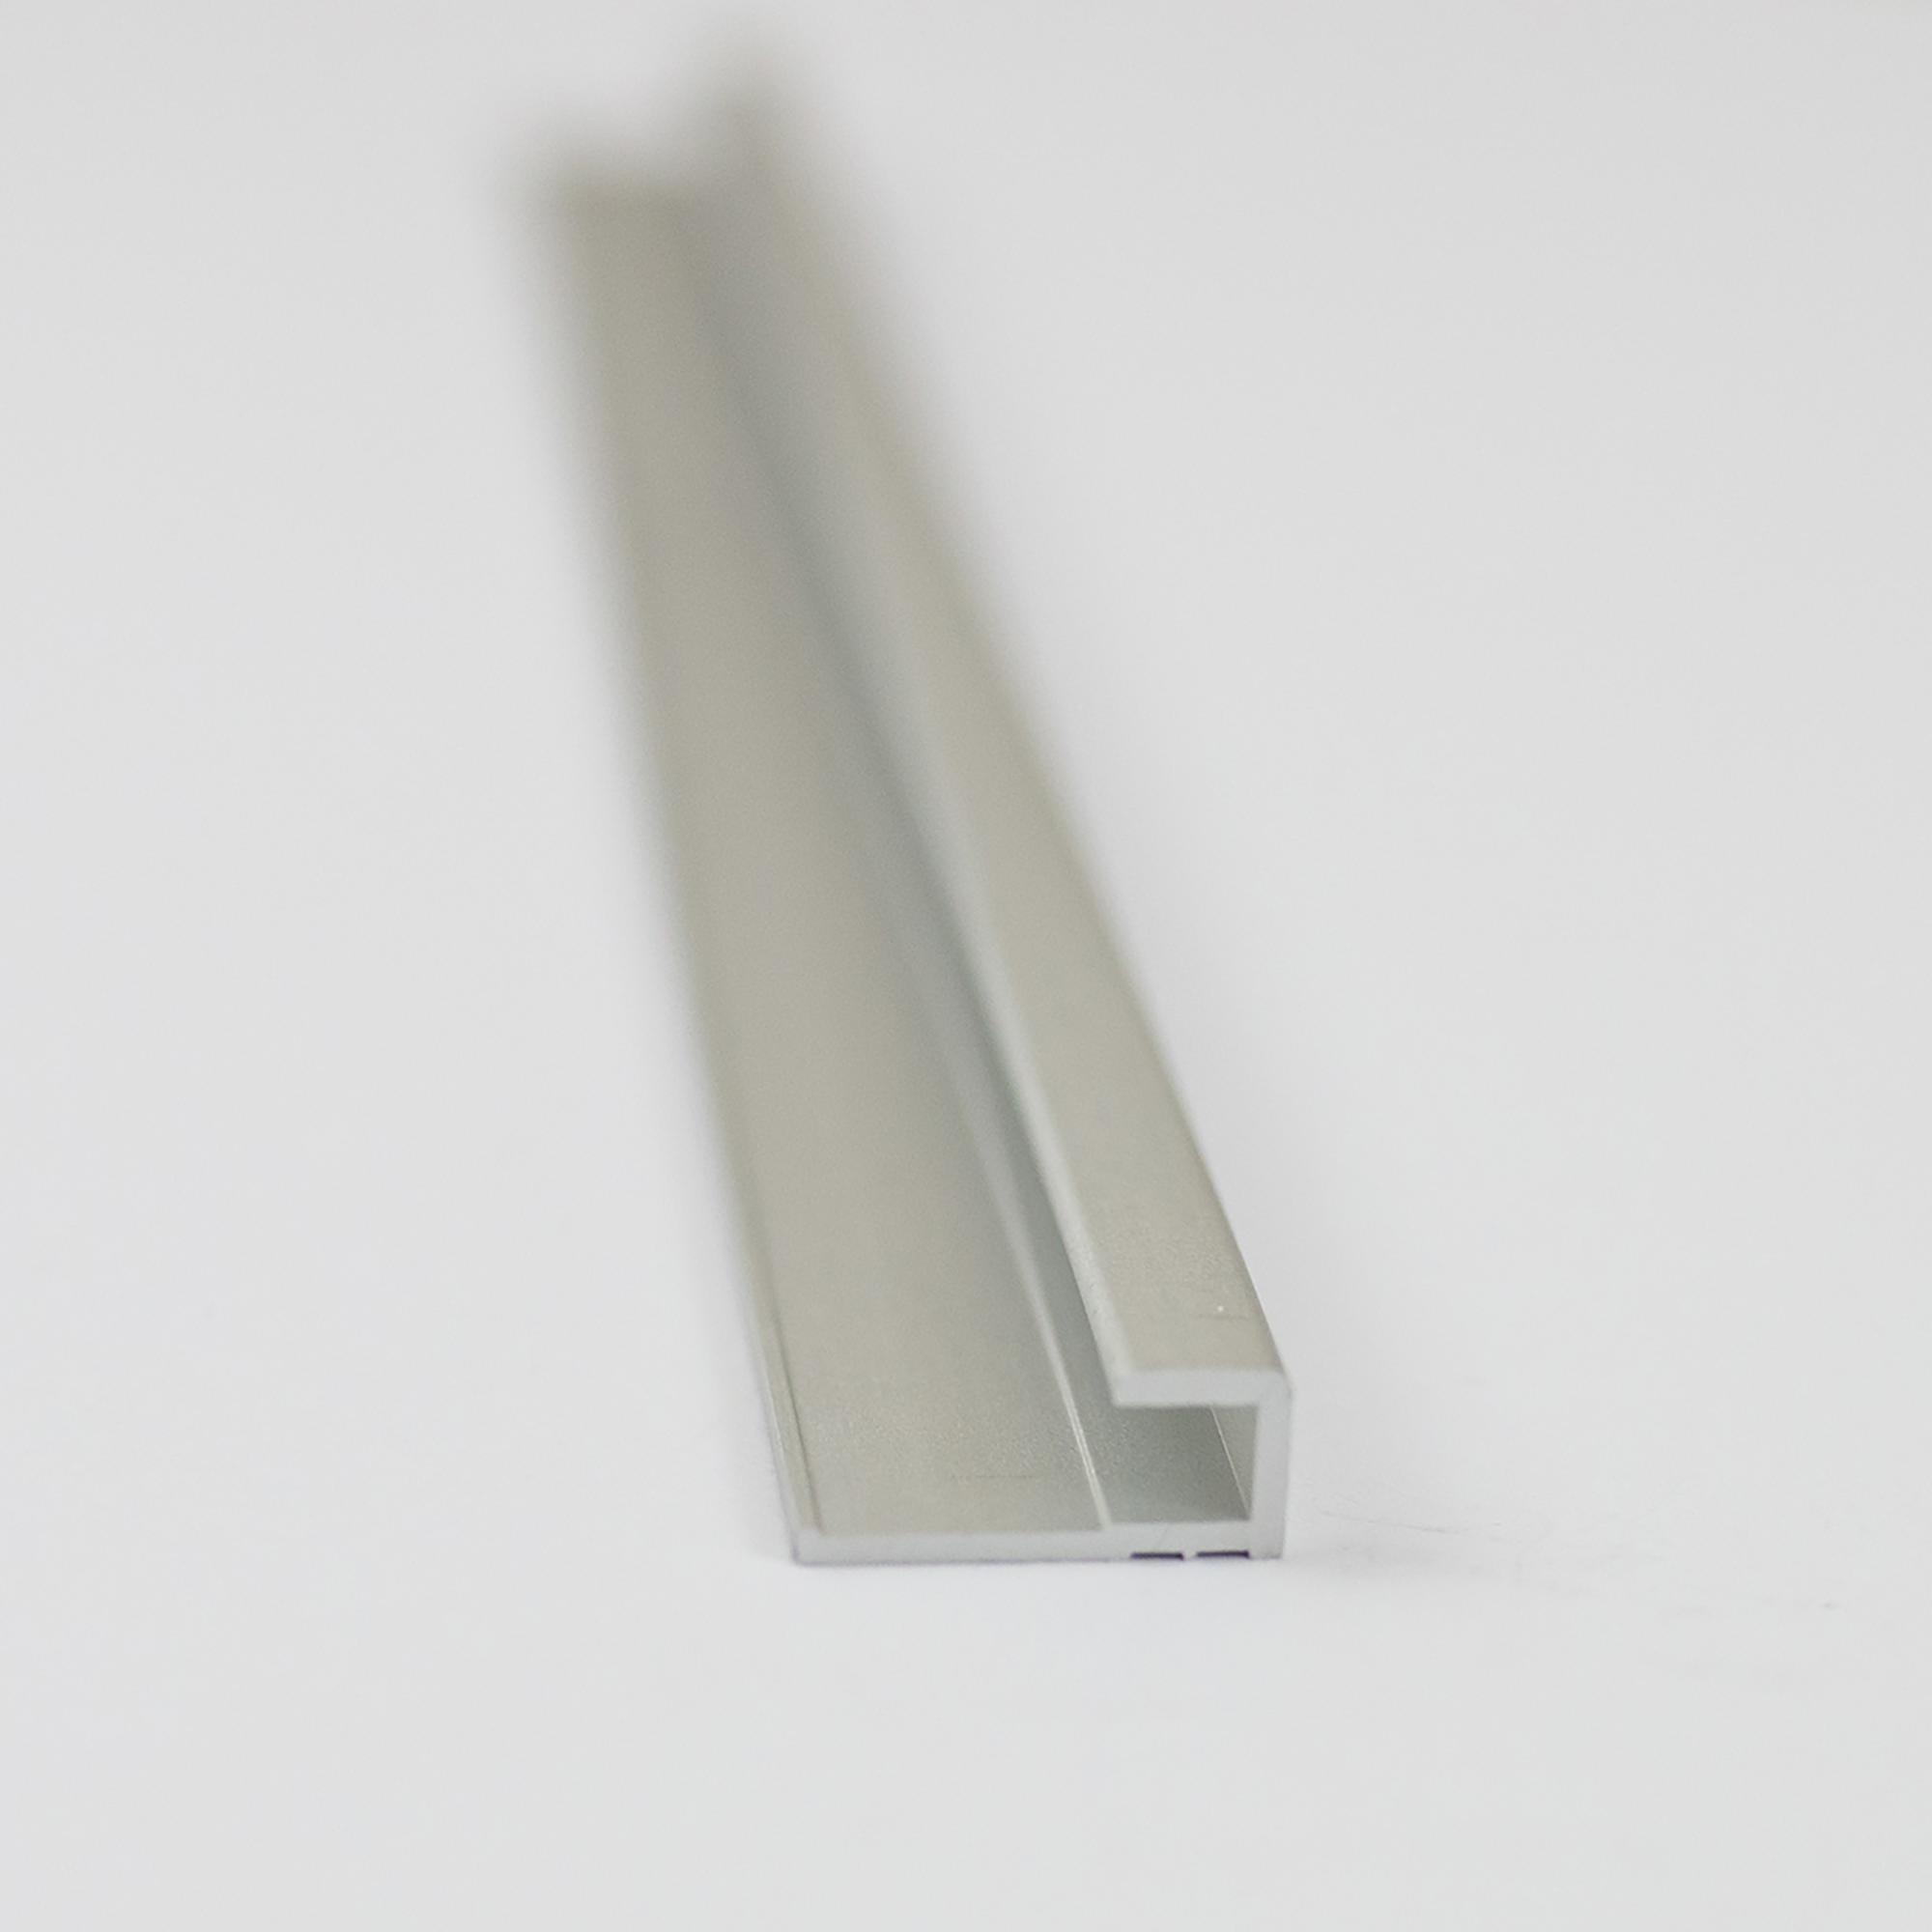 Abschlussprofil für Rückwandplatten, eckig, alu silber matt, 2550 mm + product picture